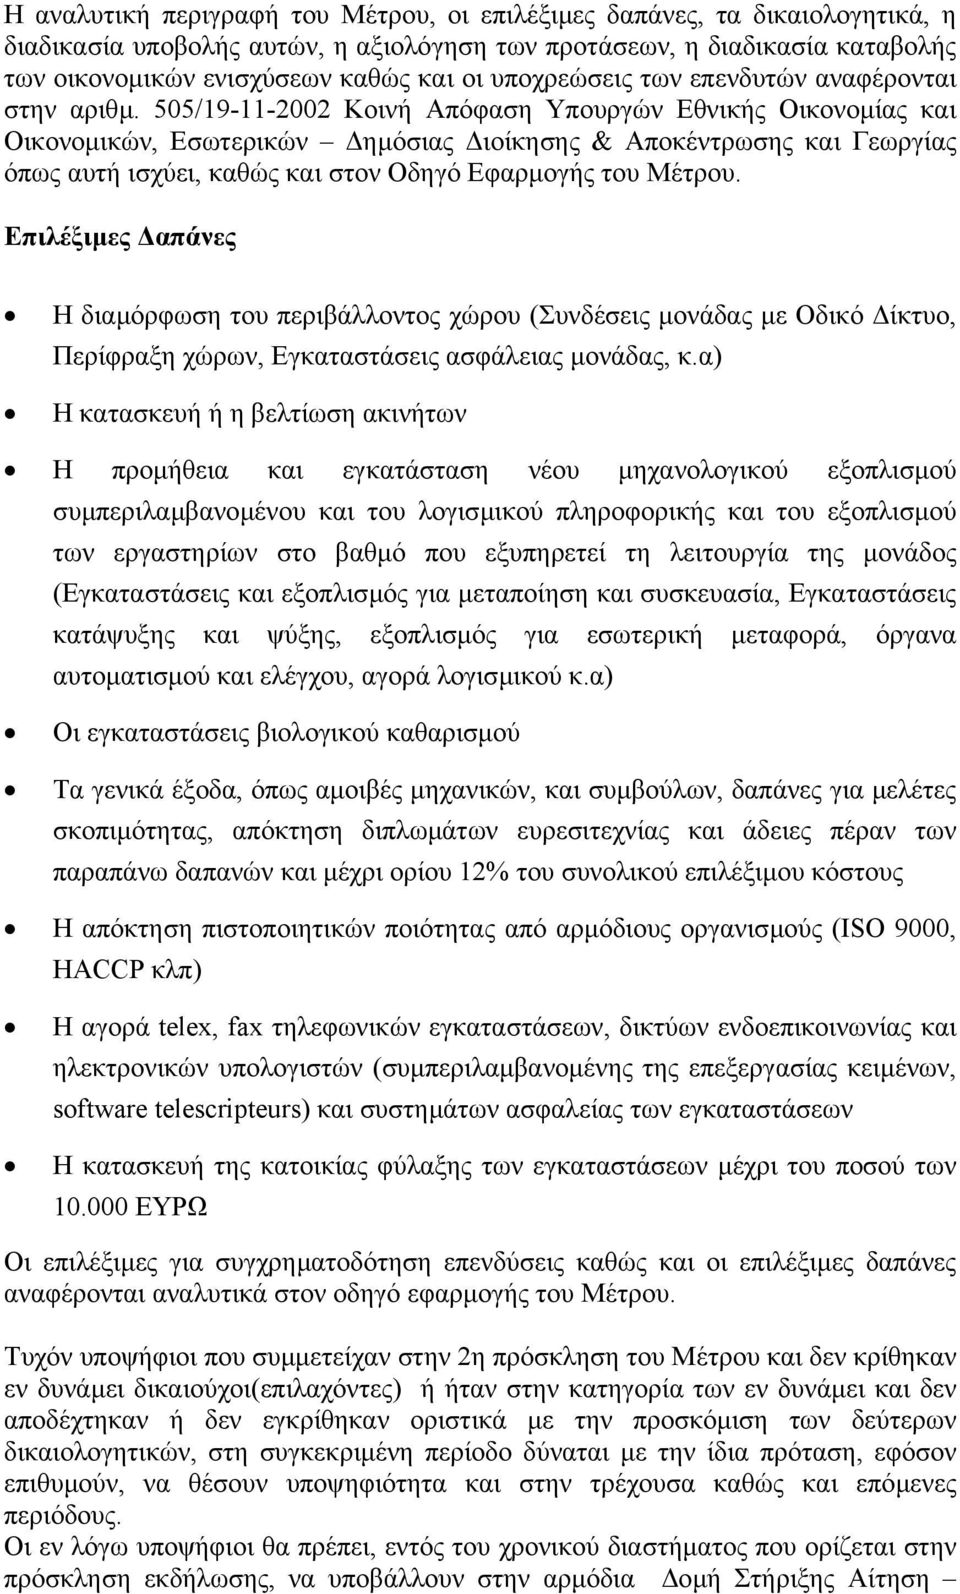 505/19-11-2002 Κοινή Απόφαση Υπουργών Εθνικής Οικονοµίας και Οικονοµικών, Εσωτερικών ηµόσιας ιοίκησης & Αποκέντρωσης και Γεωργίας όπως αυτή ισχύει, καθώς και στον Οδηγό Εφαρµογής του Μέτρου.